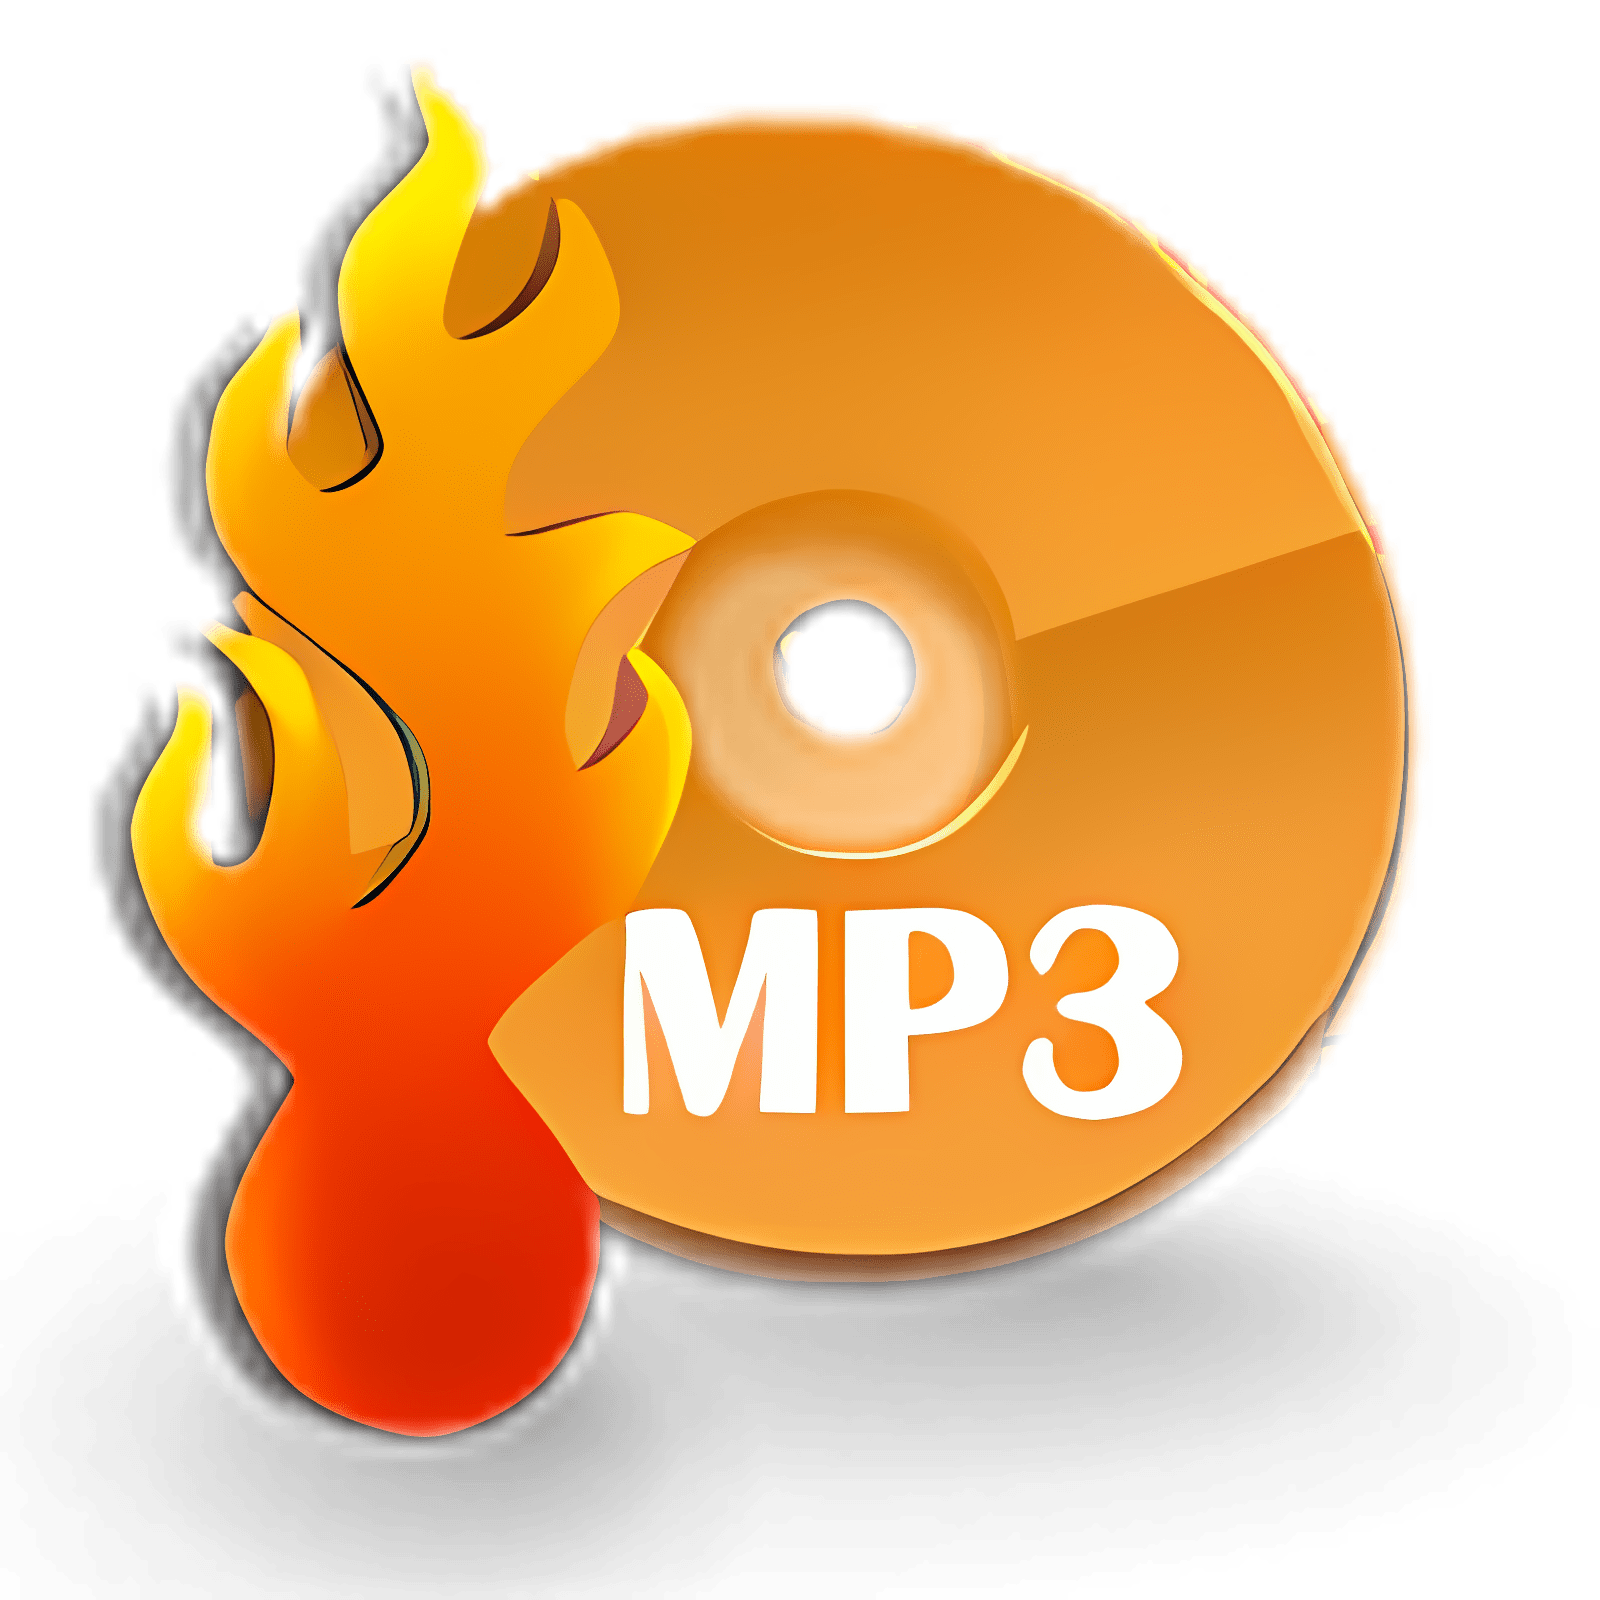 Download Free MP3 CD Burner Install Latest App downloader